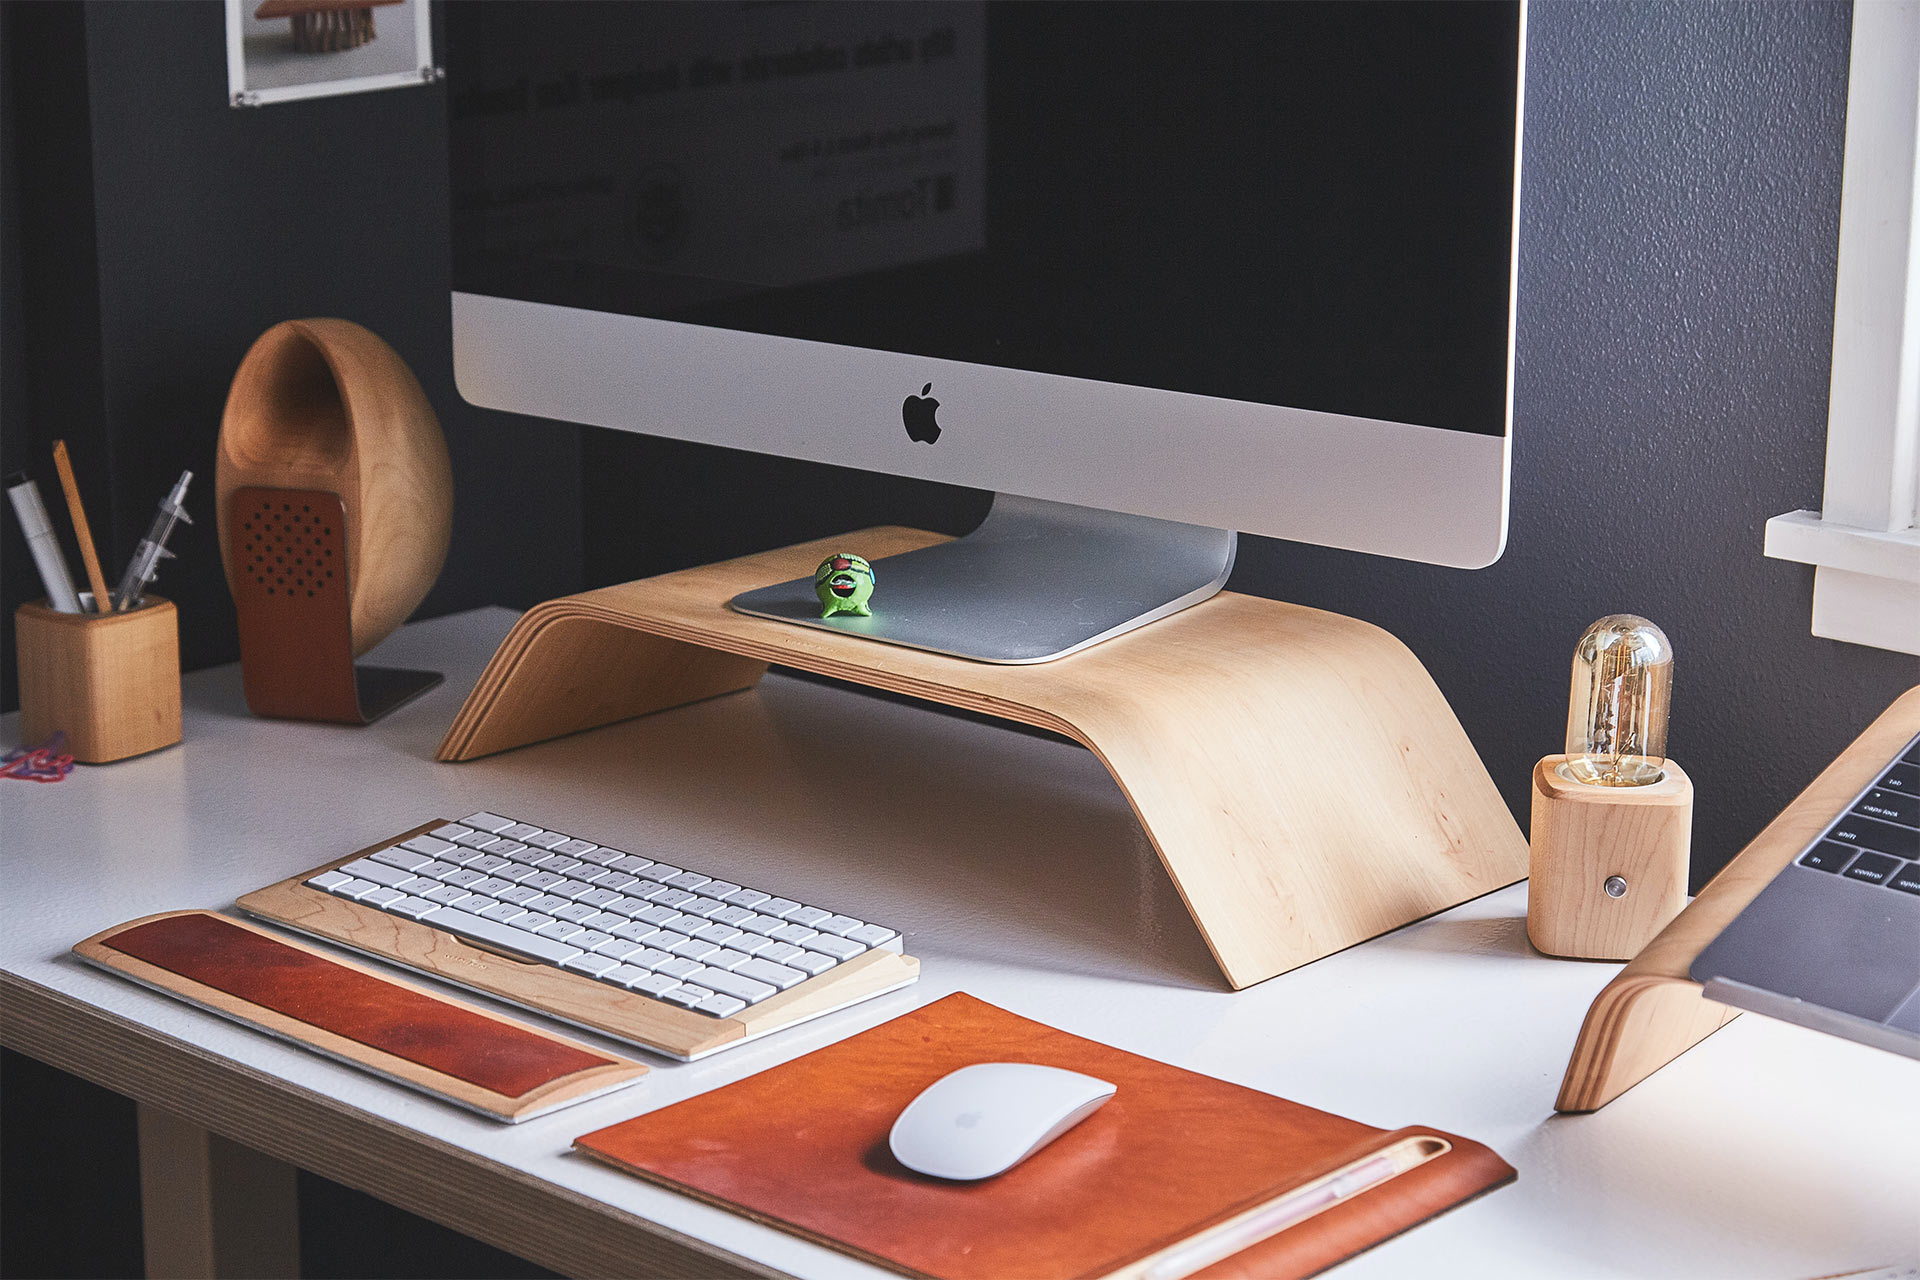 Um iMac em um suporte de madeira sobre uma mesa com teclado e mouse sem fio.